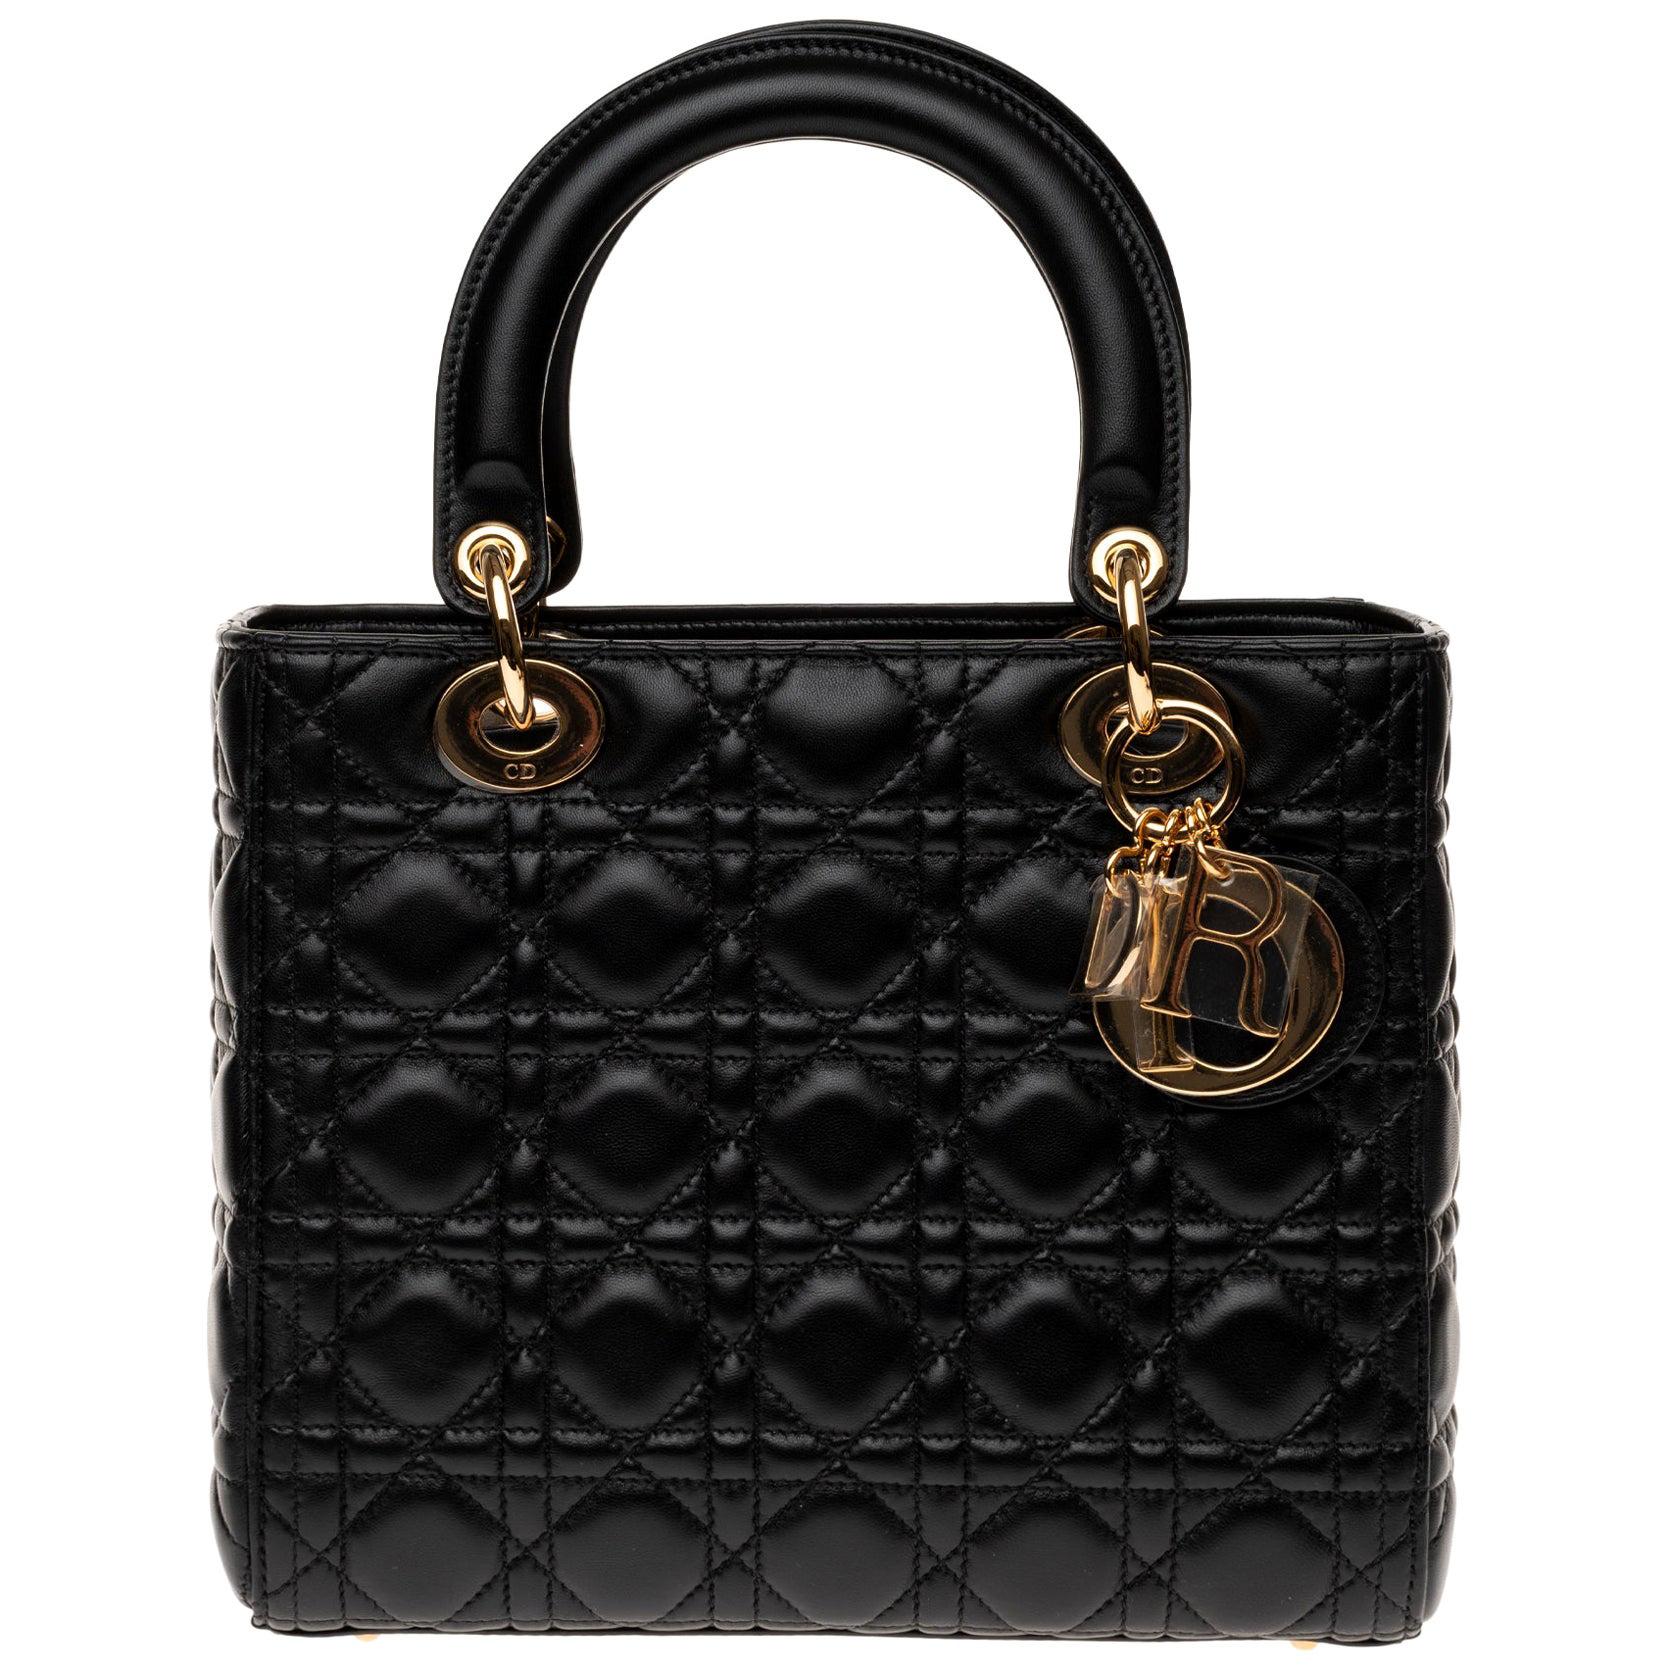  Christian Dior Lady Dior MM (Medium size) handbag in black cannage leather, GHW